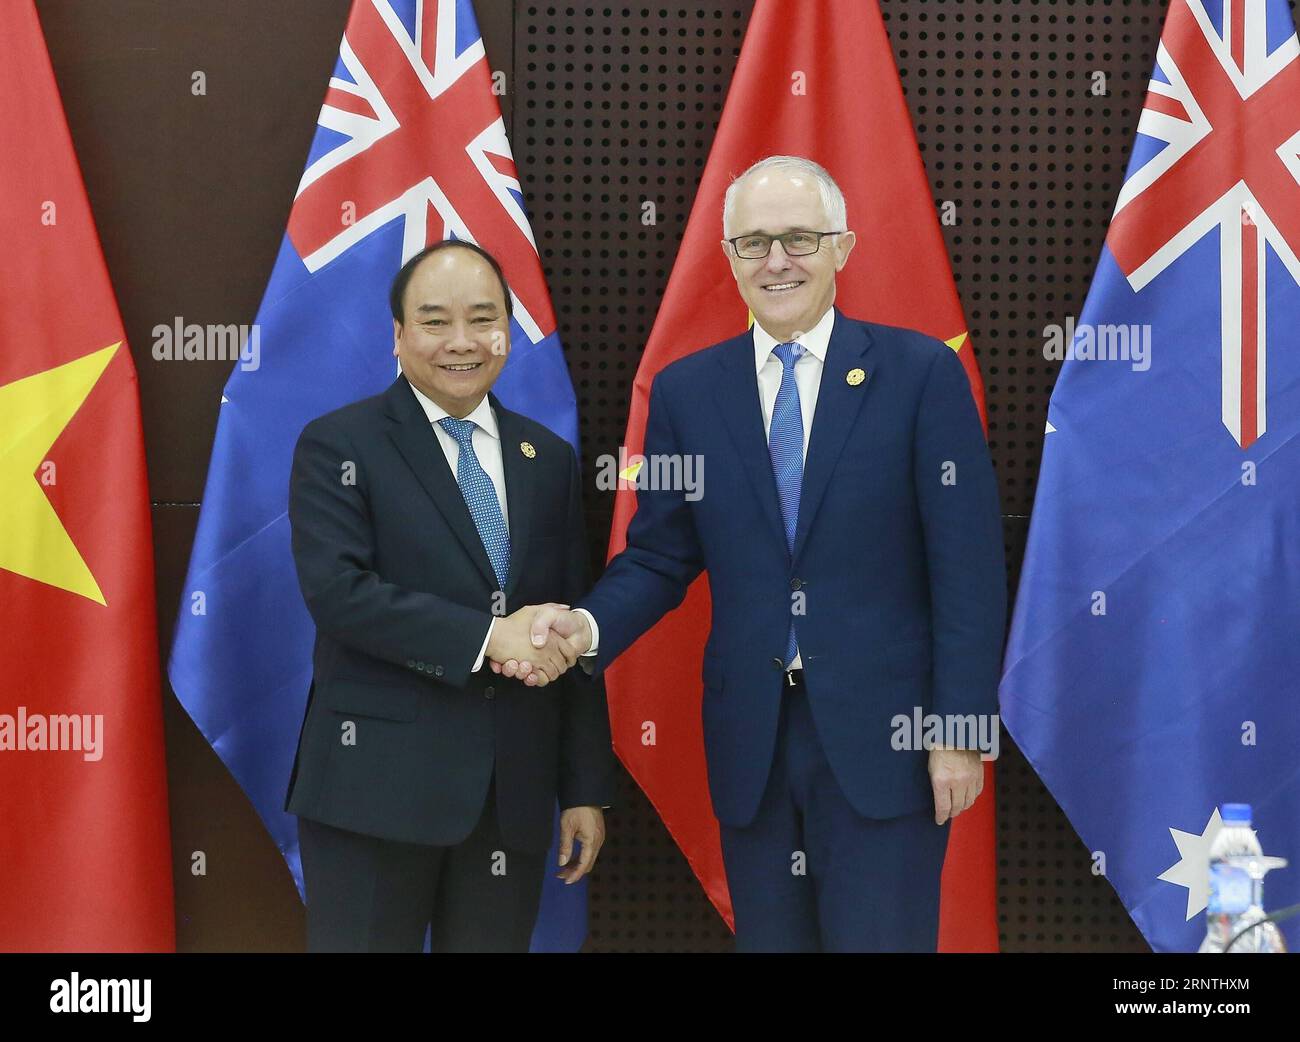 (171110) -- da NANG (VIETNAM), 10 novembre 2017 -- il primo ministro vietnamita Nguyen Xuan Phuc (L) stringe la mano al primo ministro australiano Malcolm Turnbull durante l'incontro a margine della settimana dei leader della cooperazione economica Asia-Pacifico (APEC) del 2017 a da Nang, Vietnam, il 10 novembre 2017. Sono lieto di annunciare che Australia e Vietnam rafforzeranno le nostre relazioni bilaterali al livello di una partnership strategica, il primo ministro australiano Malcolm Turnbull ha annunciato qui venerdì. ) VIETNAM-DA NANG-AUSTRALIA-PM-MEETING VNA PUBLICATIONXNOTXINXCHN Foto Stock